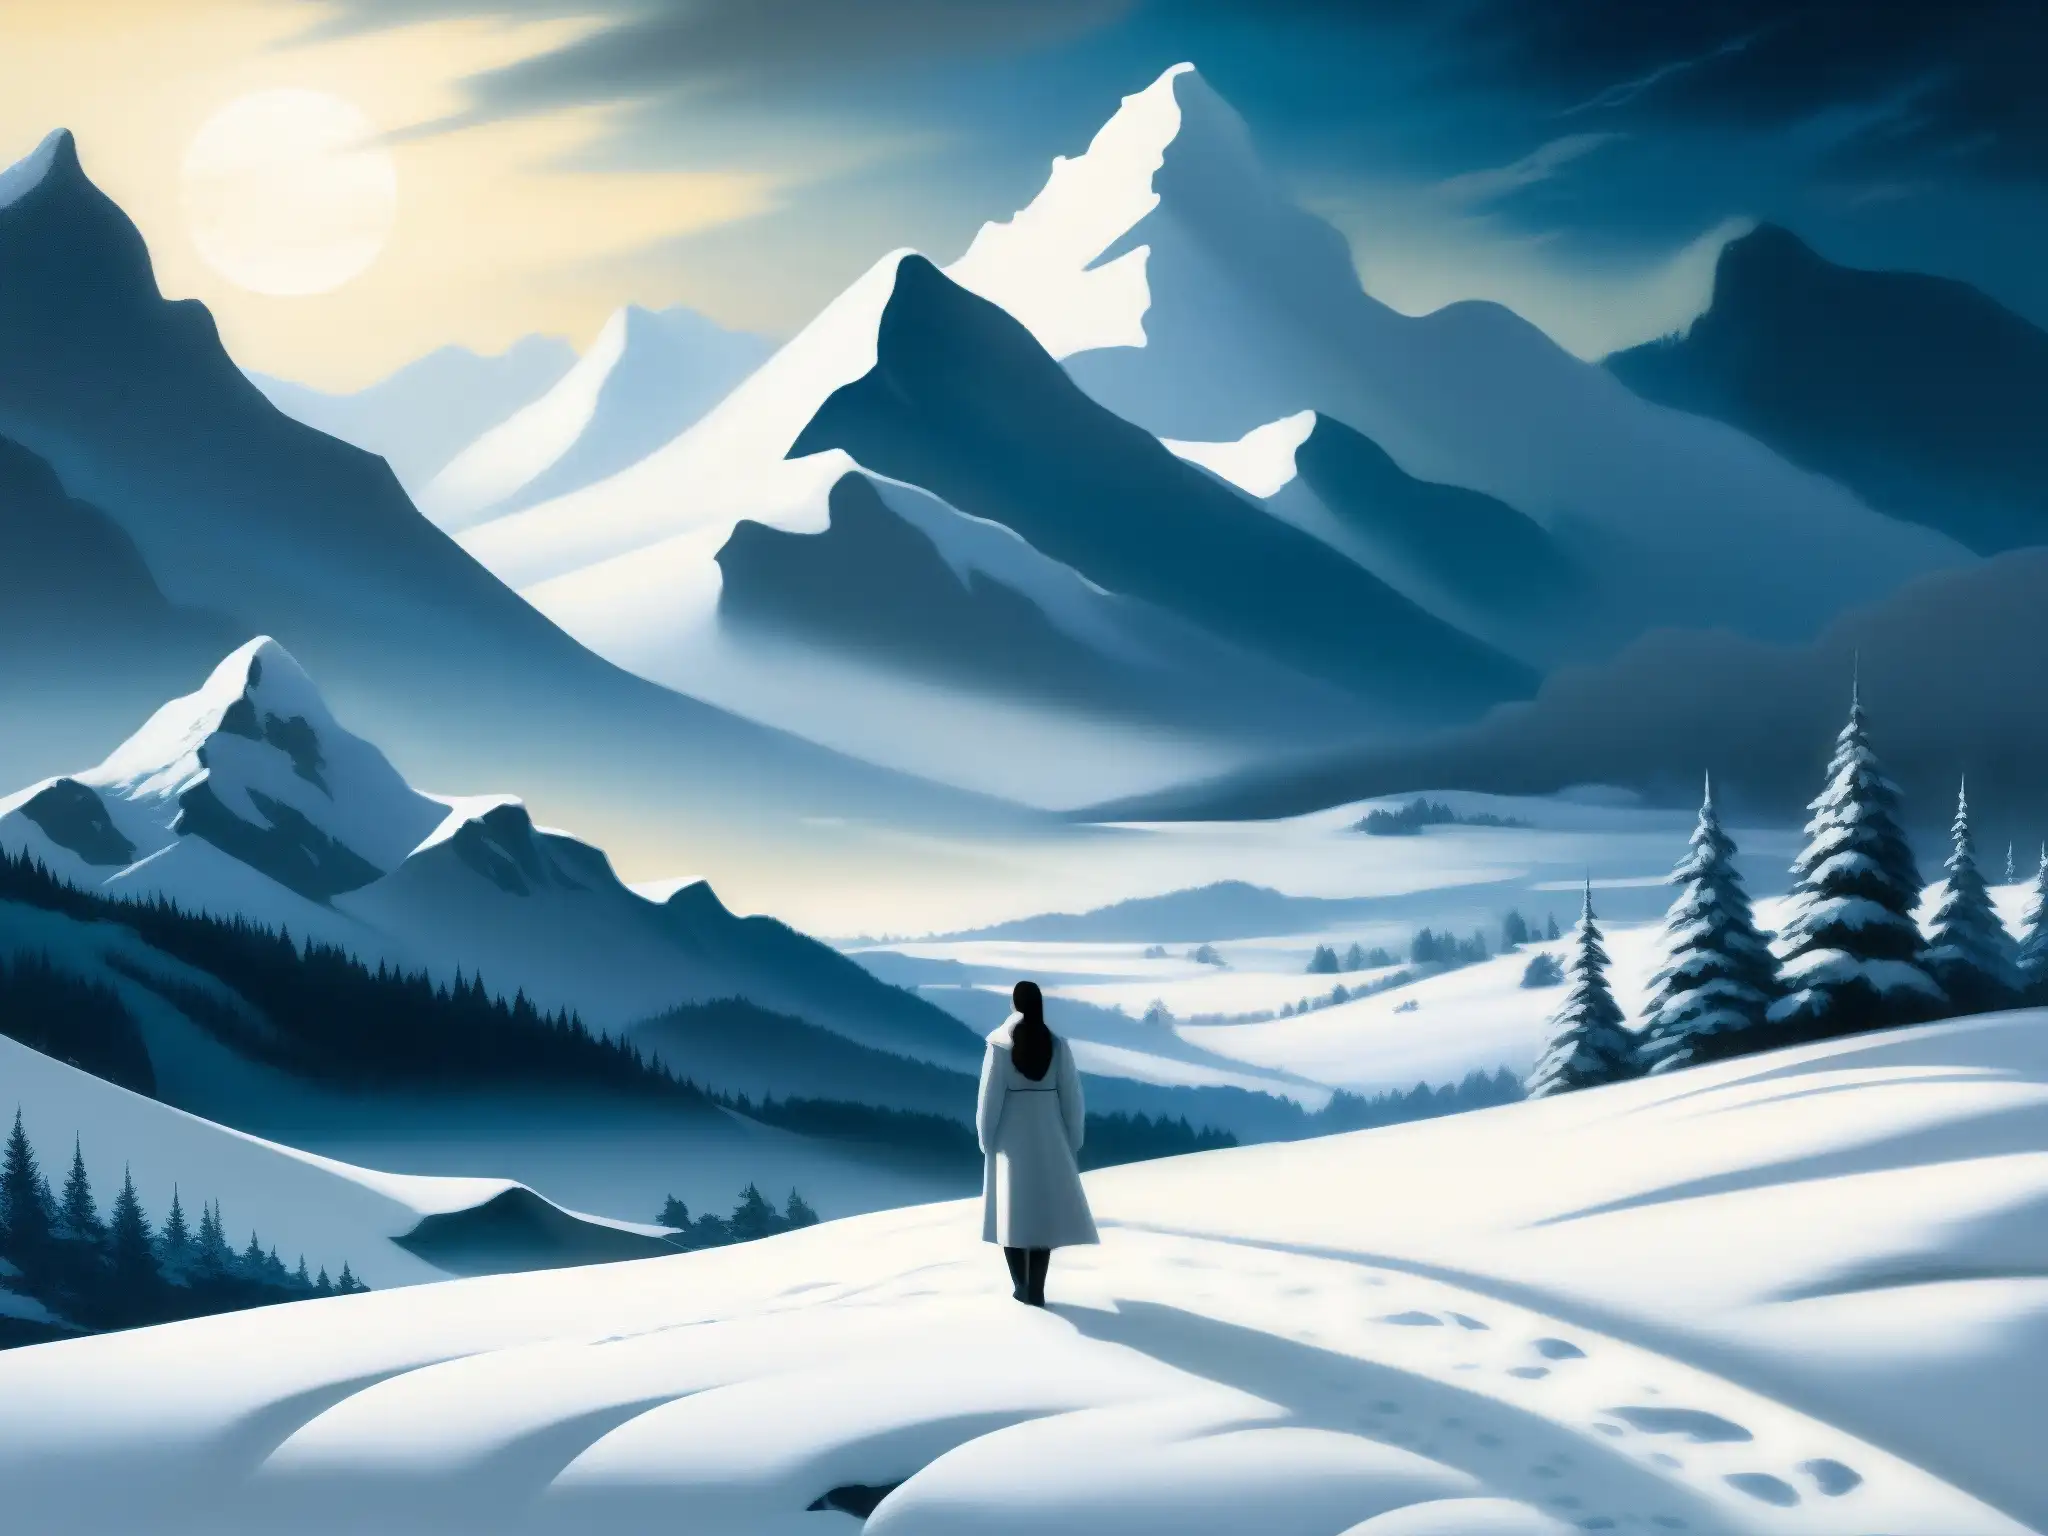 Una pintura hipnotizante de un paisaje nevado tranquilo con una figura misteriosa envuelta en blanco, fusionada con el entorno invernal